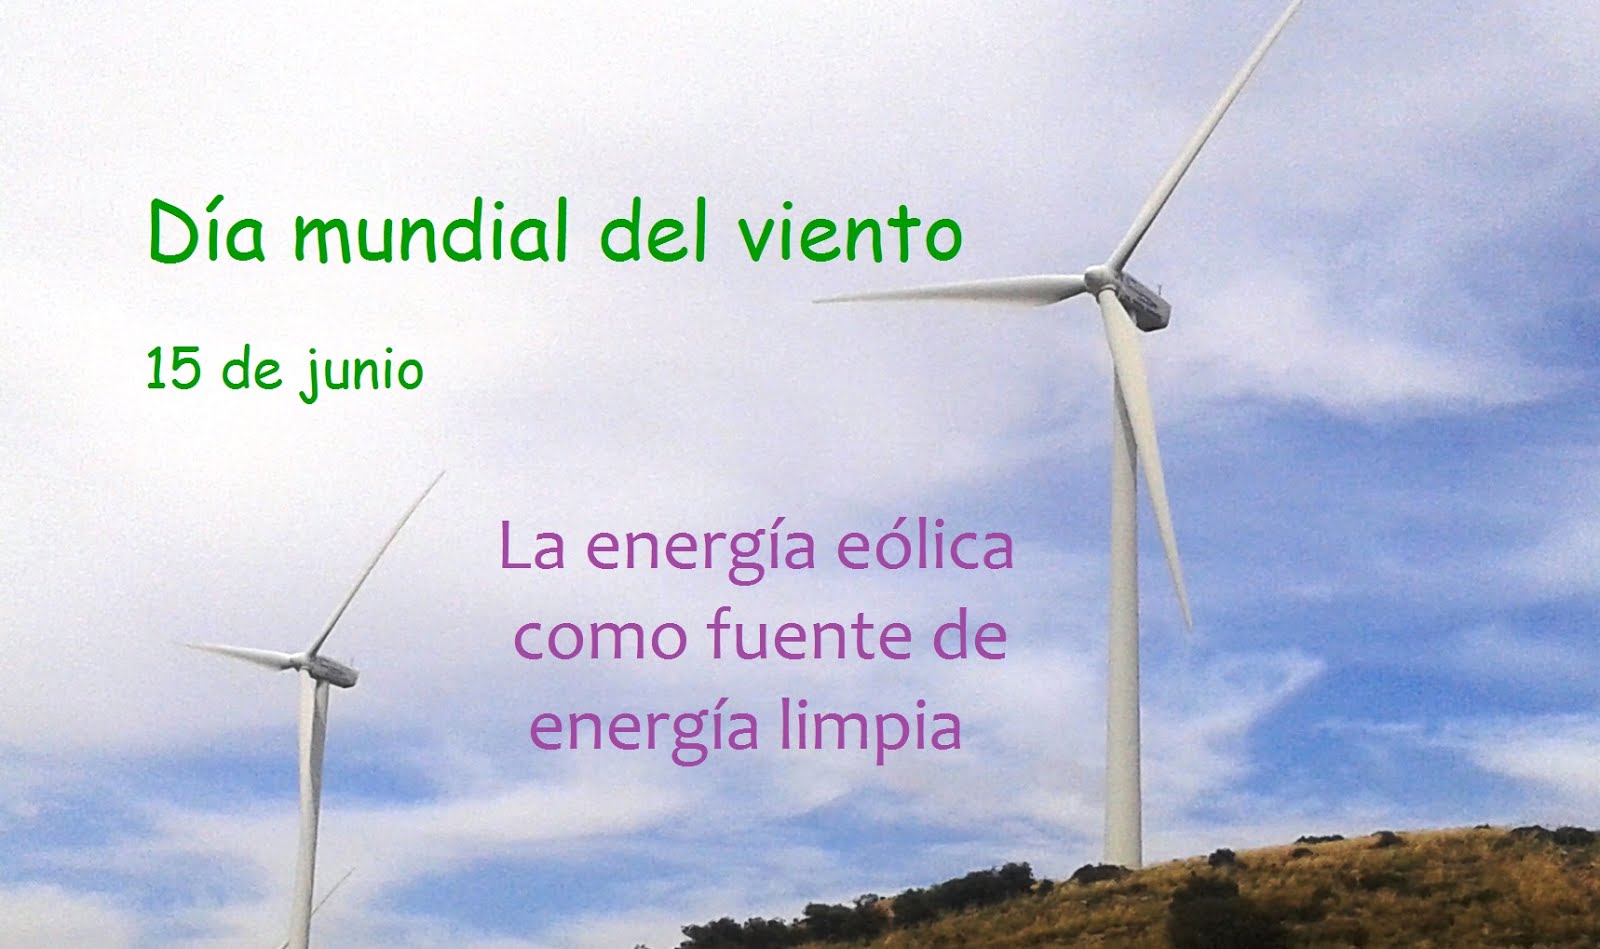 15 de junio - Día mundial del viento